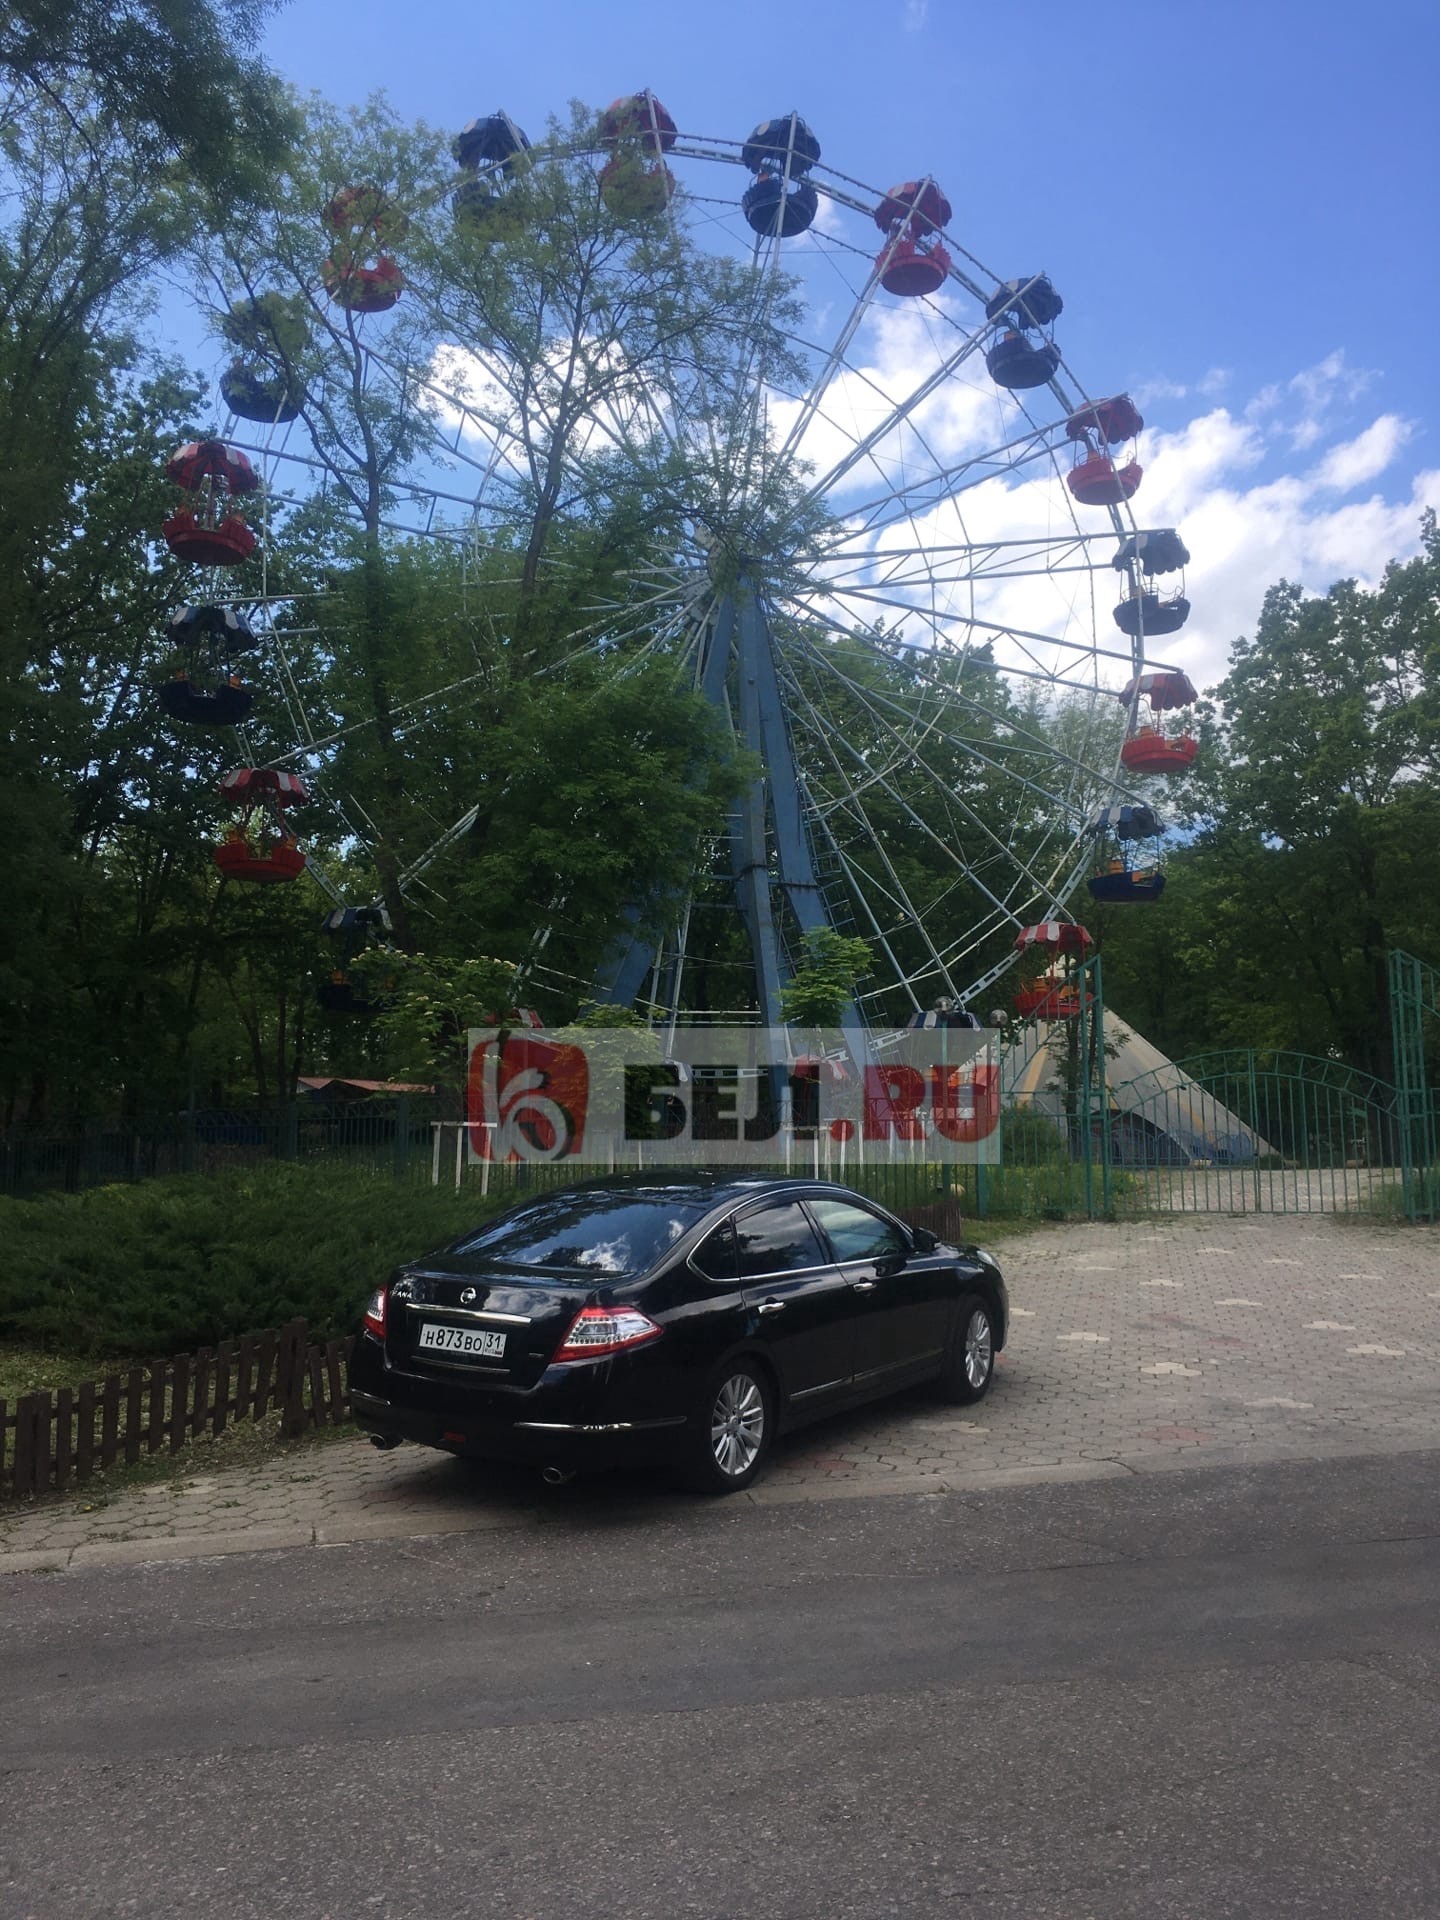 Центральный парк Белгорода заполонили автомобили